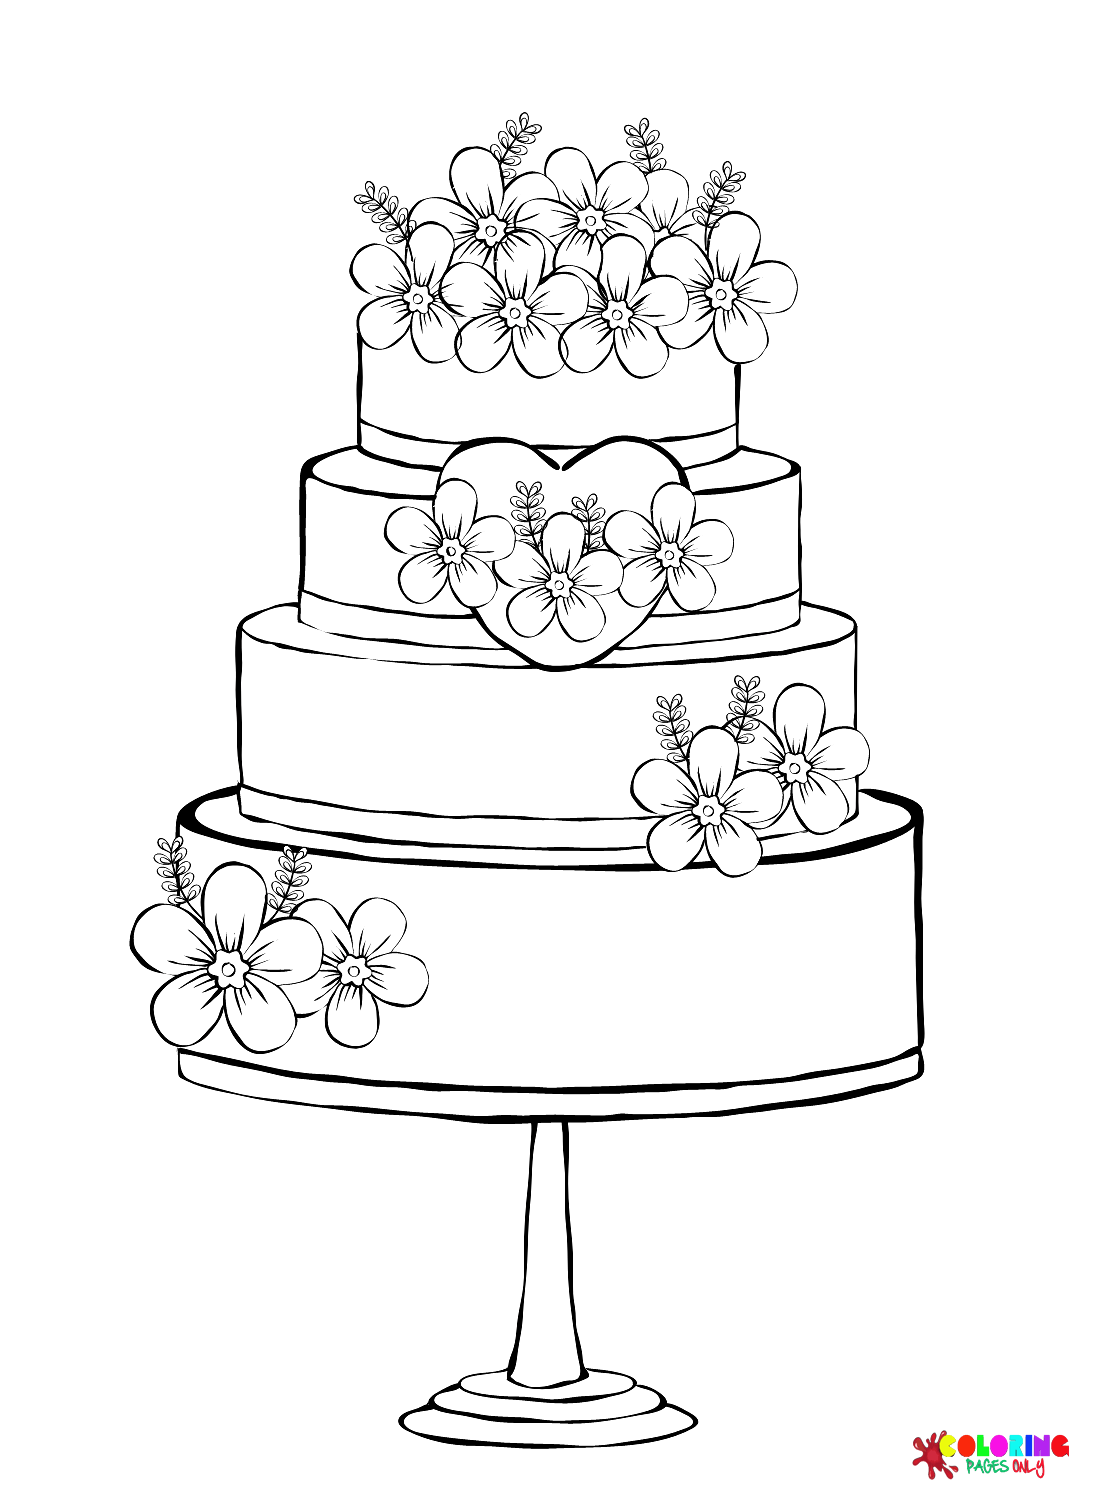 甜蜜的婚礼蛋糕与婚礼蛋糕上的鲜花